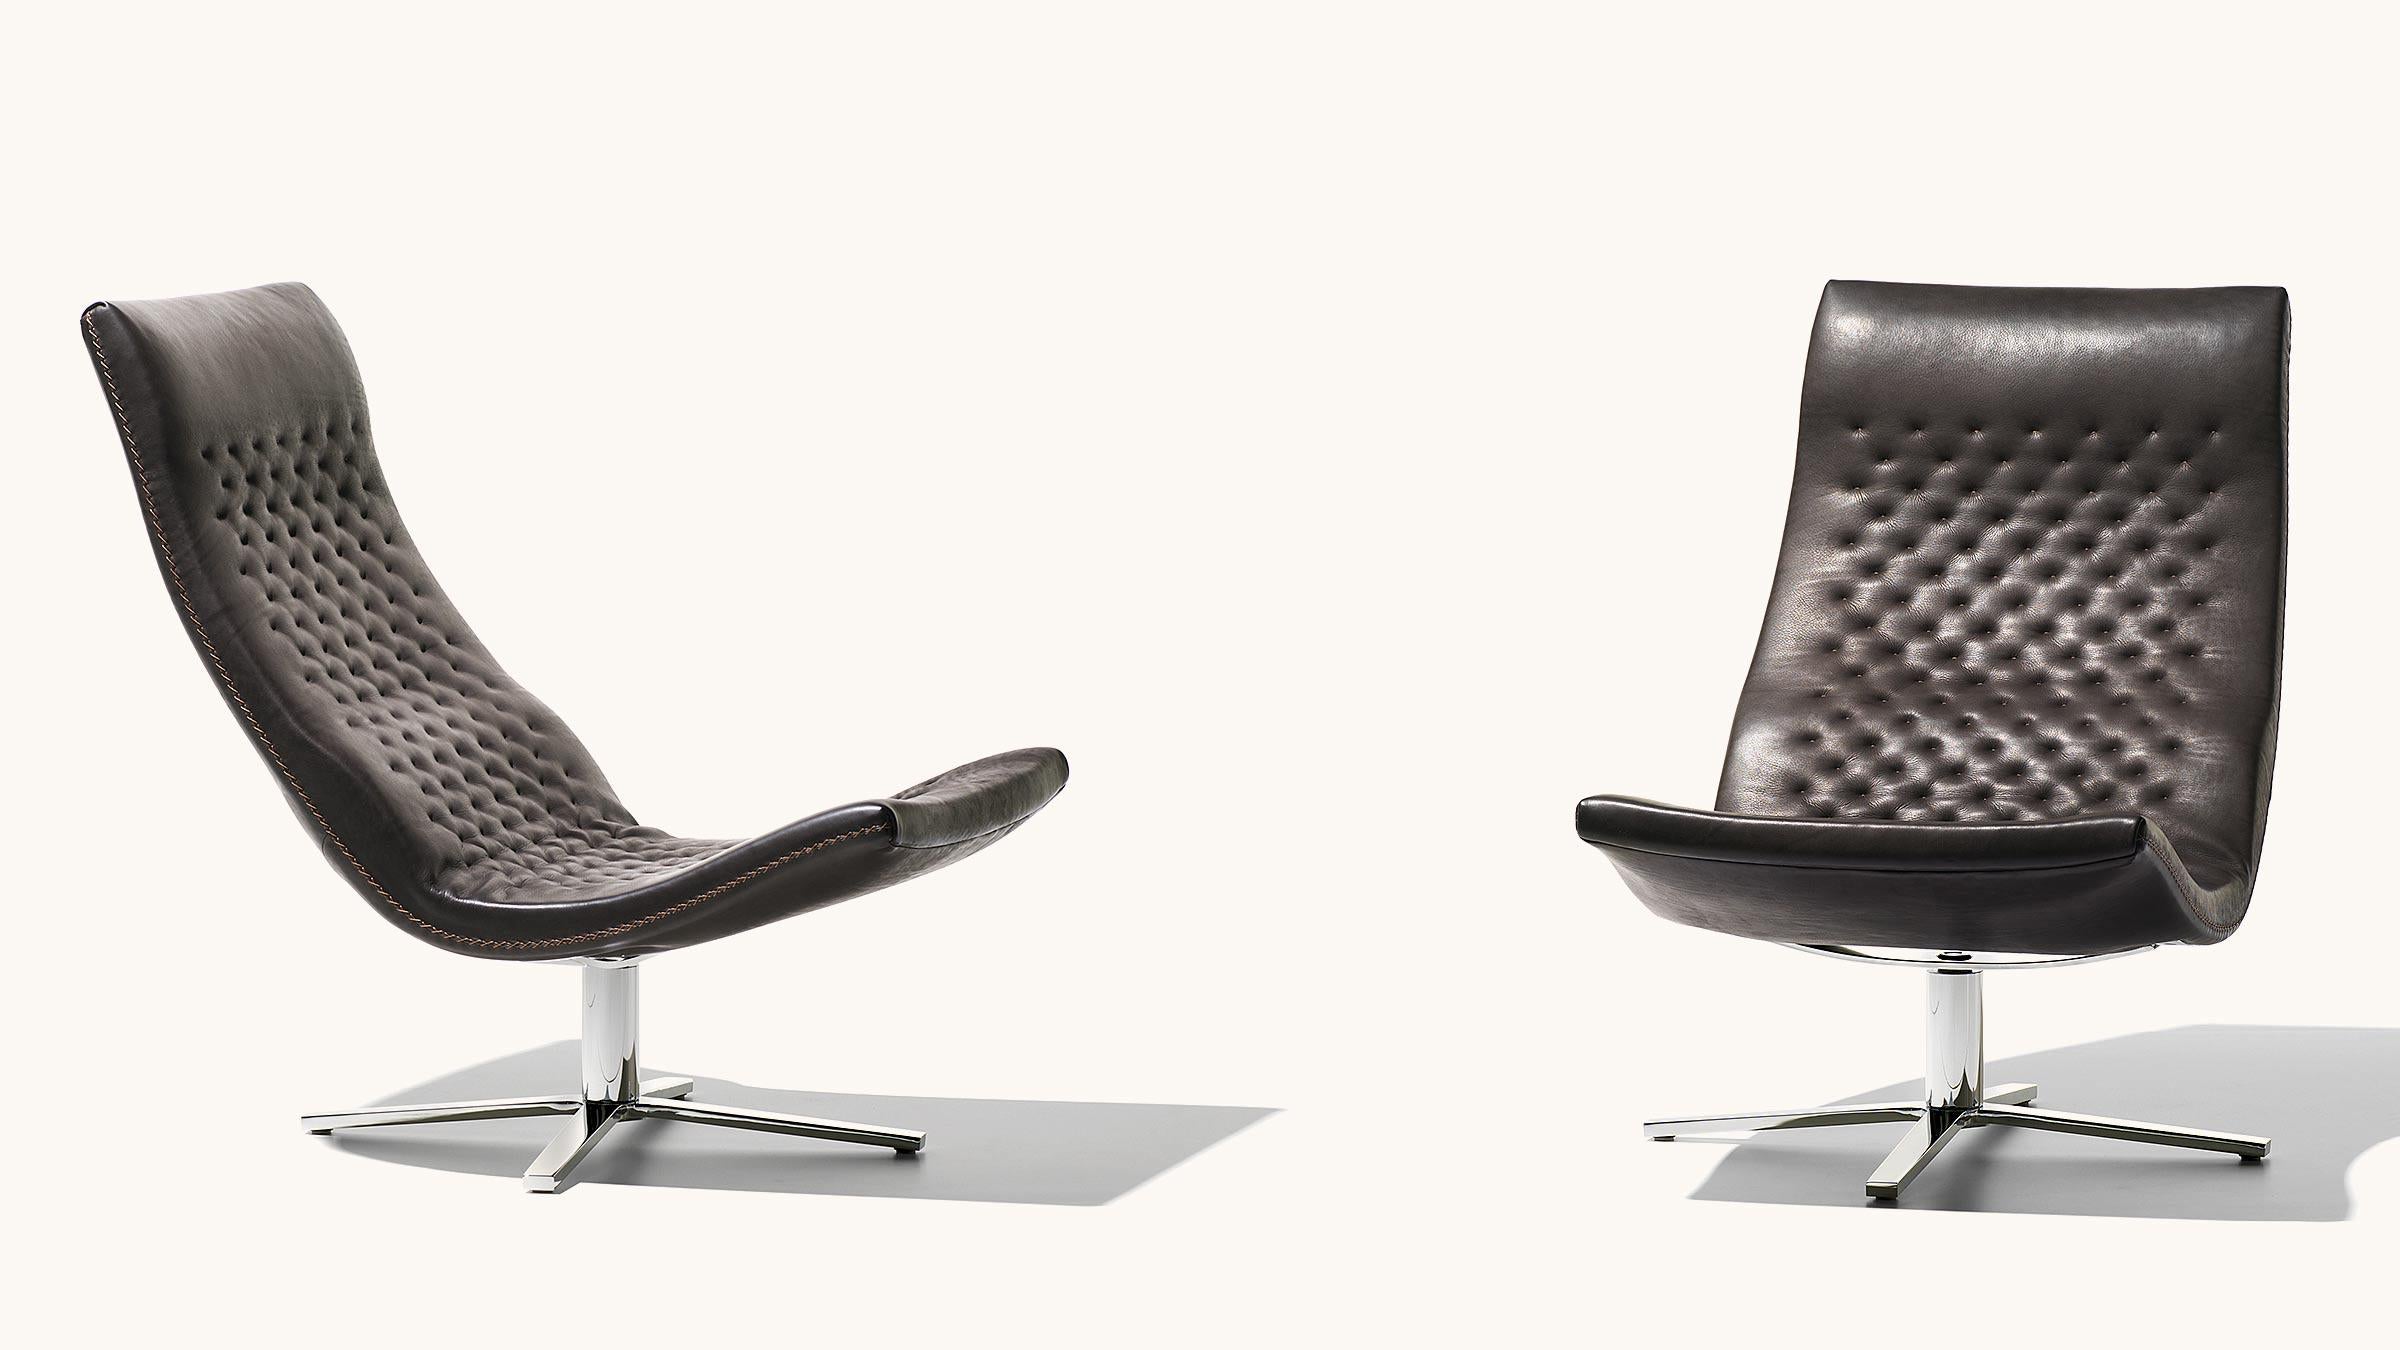 Le fauteuil pivotant DS-51 a contribué à établir la réputation mondiale de De Sede en matière de fabrication artisanale suisse et de production de la plus haute qualité. Disponible en option avec ou sans accoudoirs, ce modèle Classic garantit un